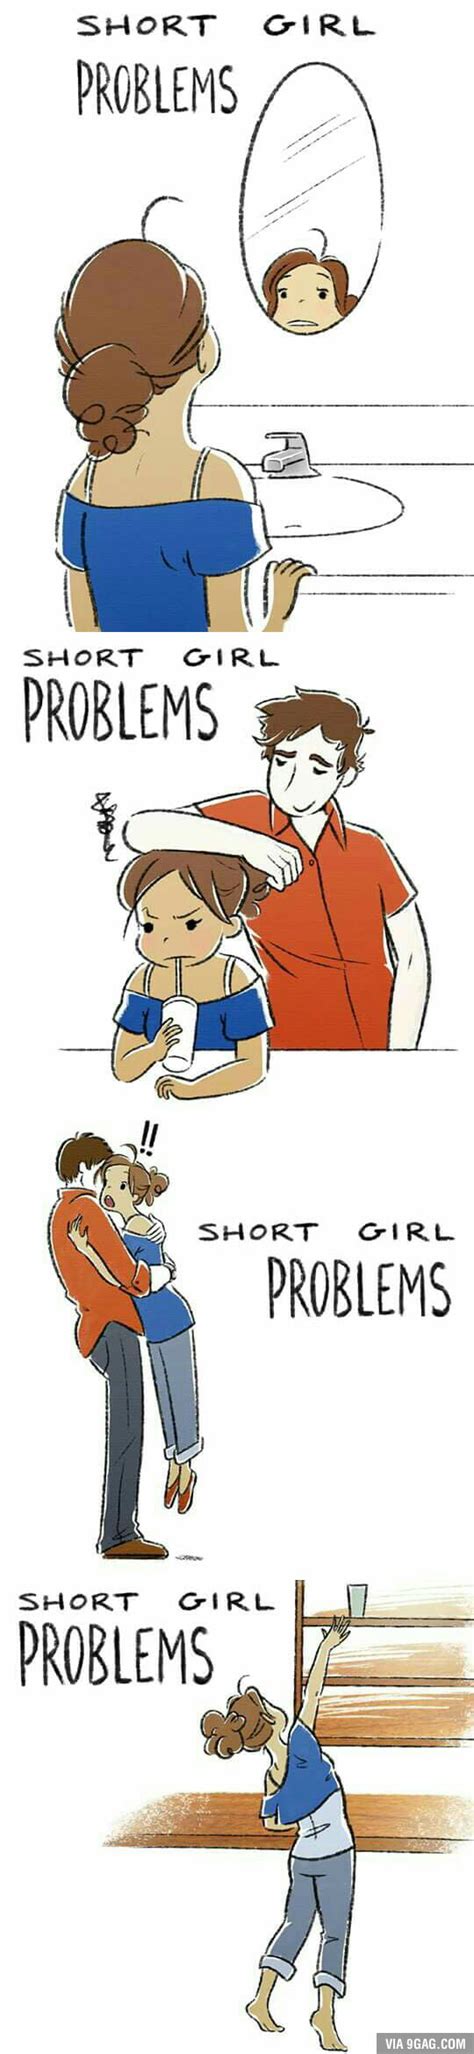 Short Girl Problems 9gag